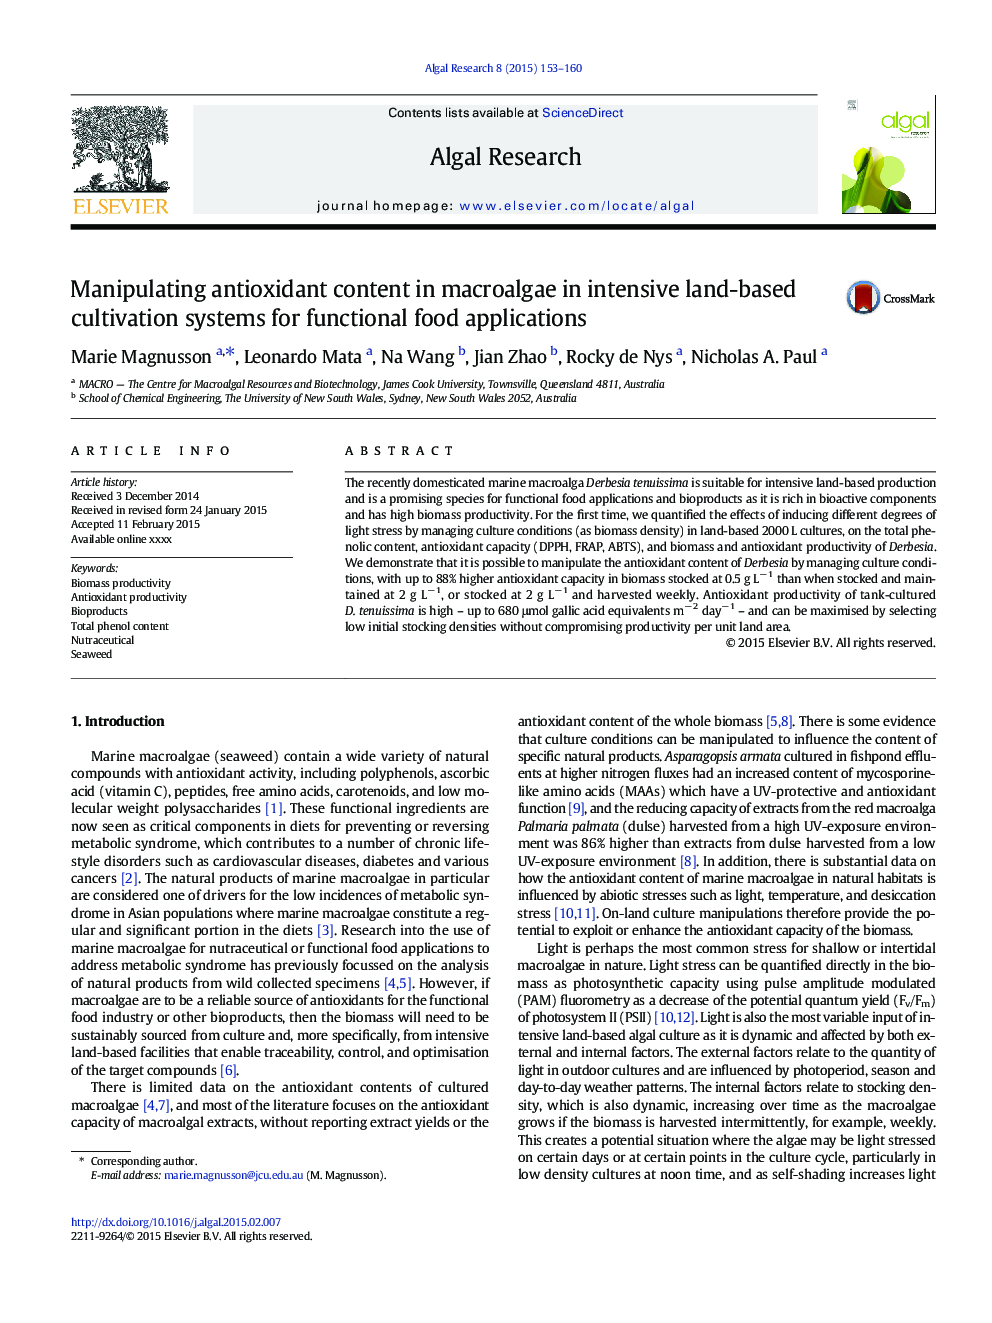 تحرک محتوای آنتی اکسیدانی در ماکولا گاو در سیستم های کشت پایدار مبتنی بر زمین برای برنامه های غذایی کاربردی 